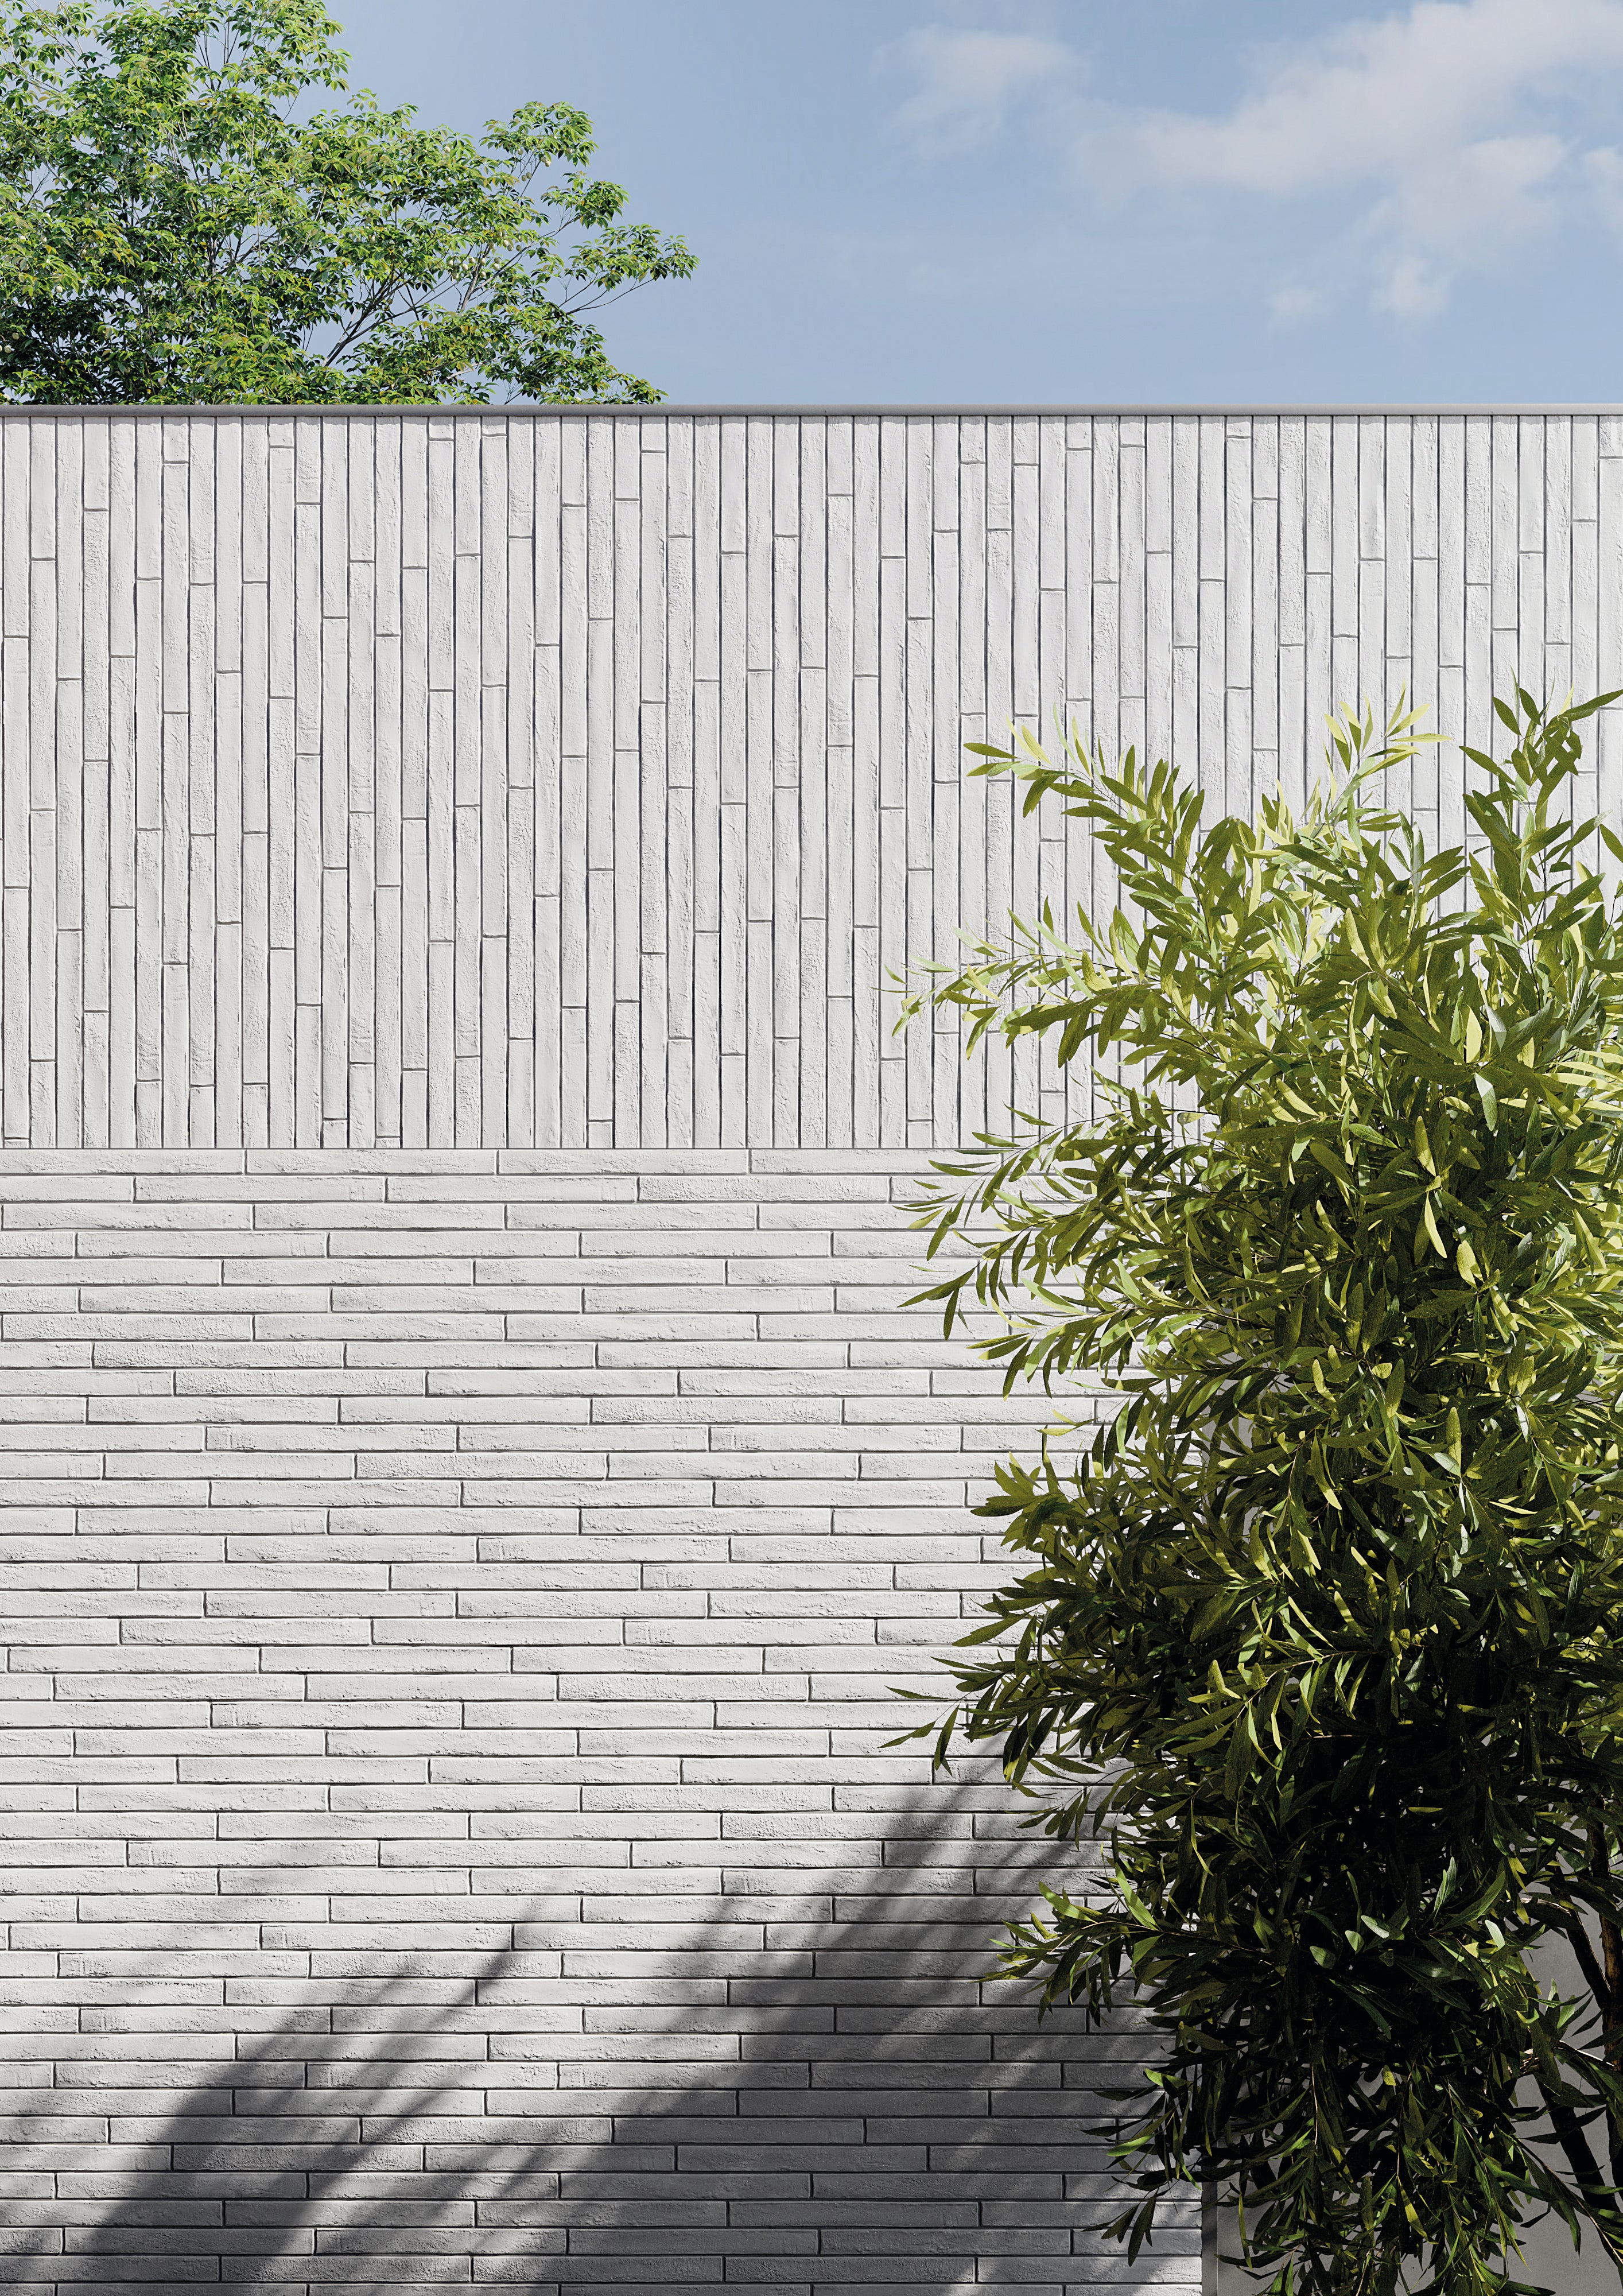 Westside 2x18 White Brick Matte Porcelain Tile